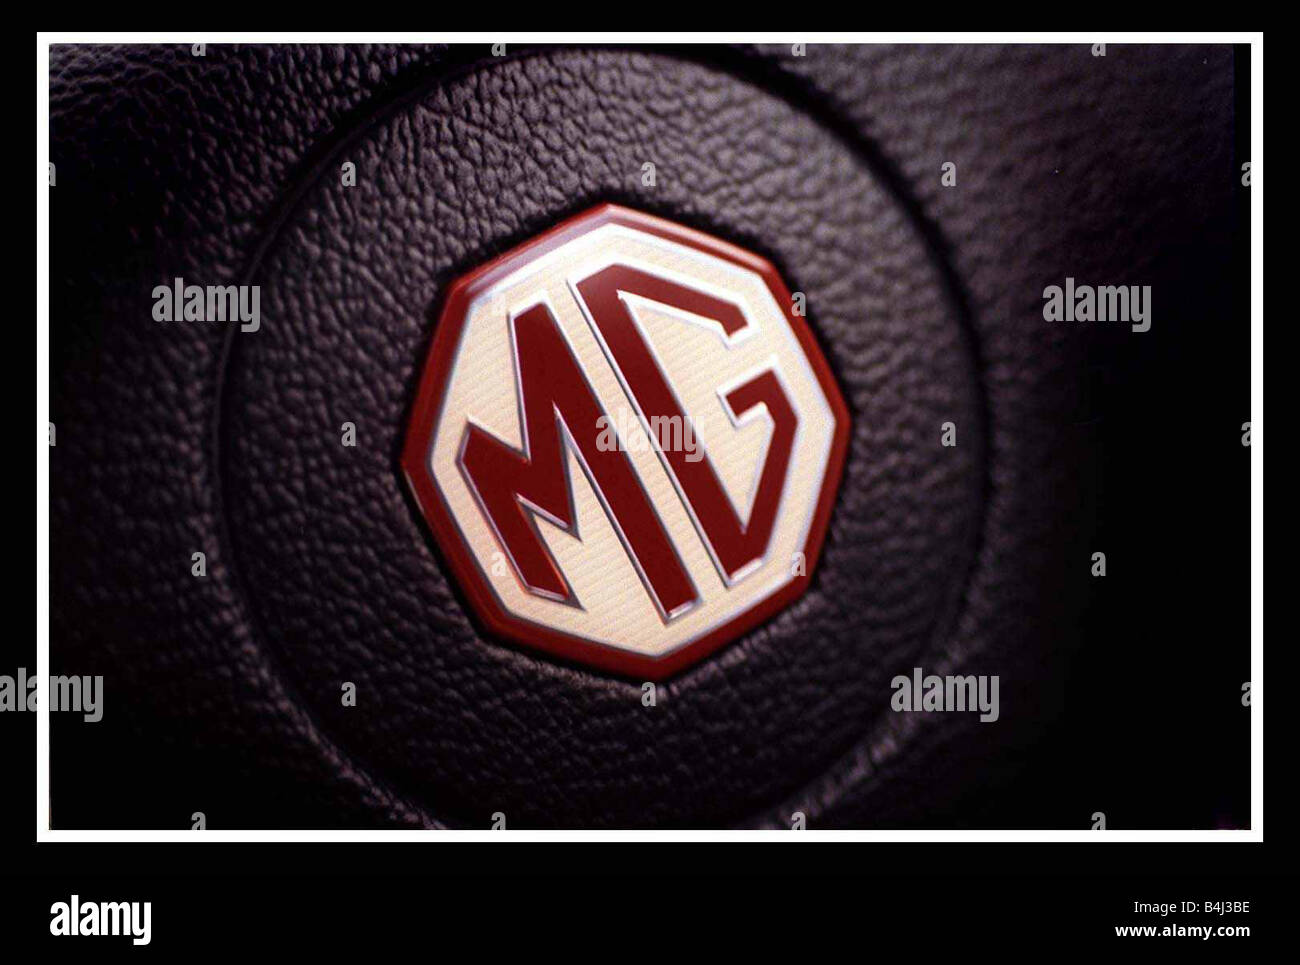 MG MGF December 1999 Steering whell boss MG logo badge Stock Photo